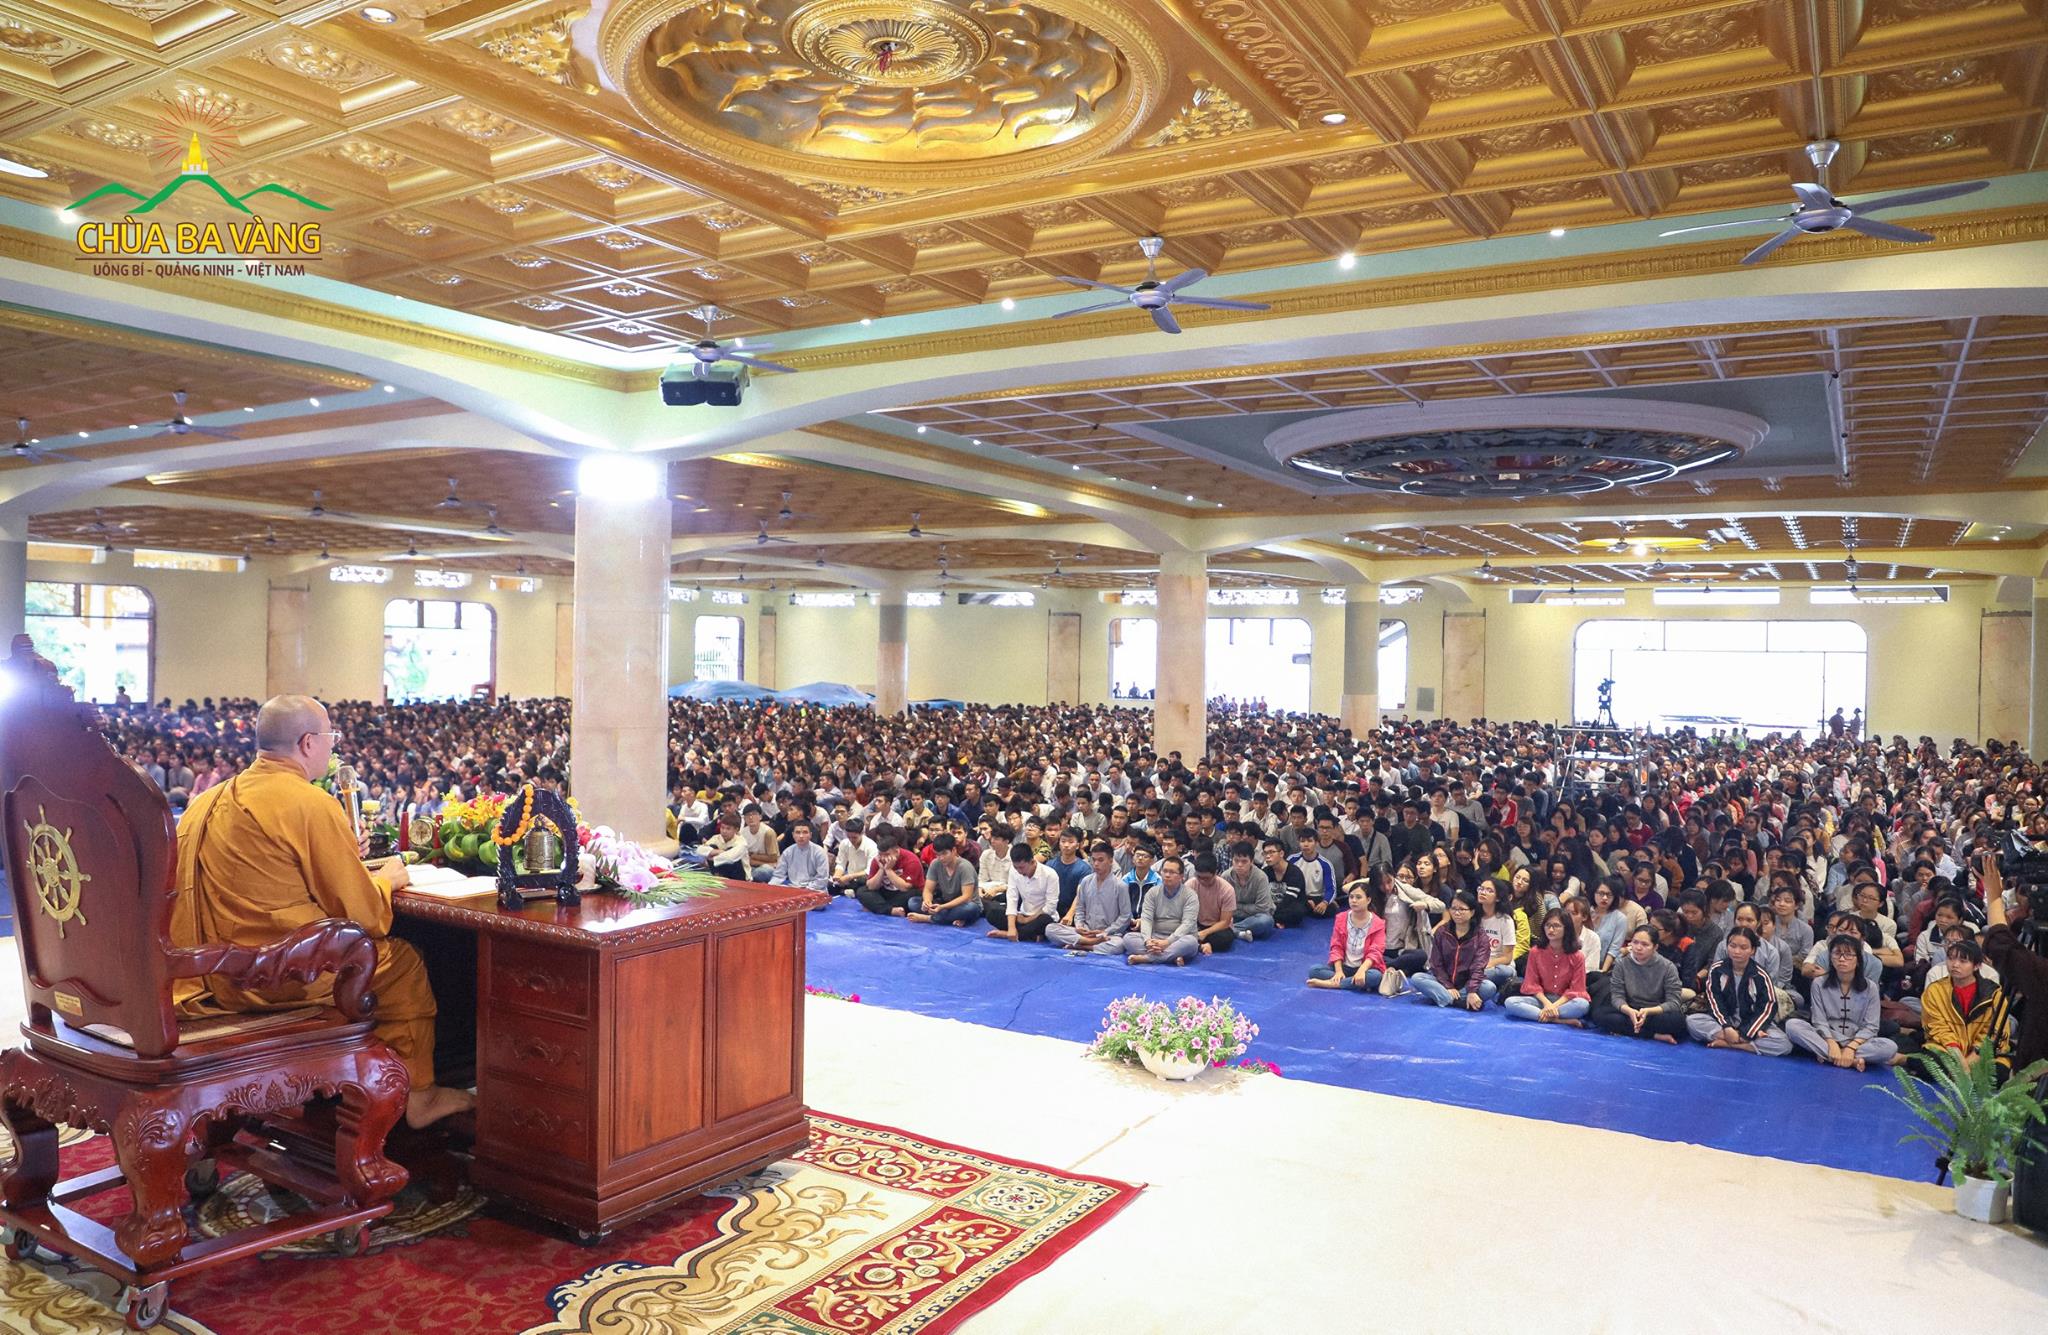 Hàng nghìn khóa sinh về chùa nghe Thầy Thích Trúc Thái Minh giảng Pháp trong khóa tu một ngày.